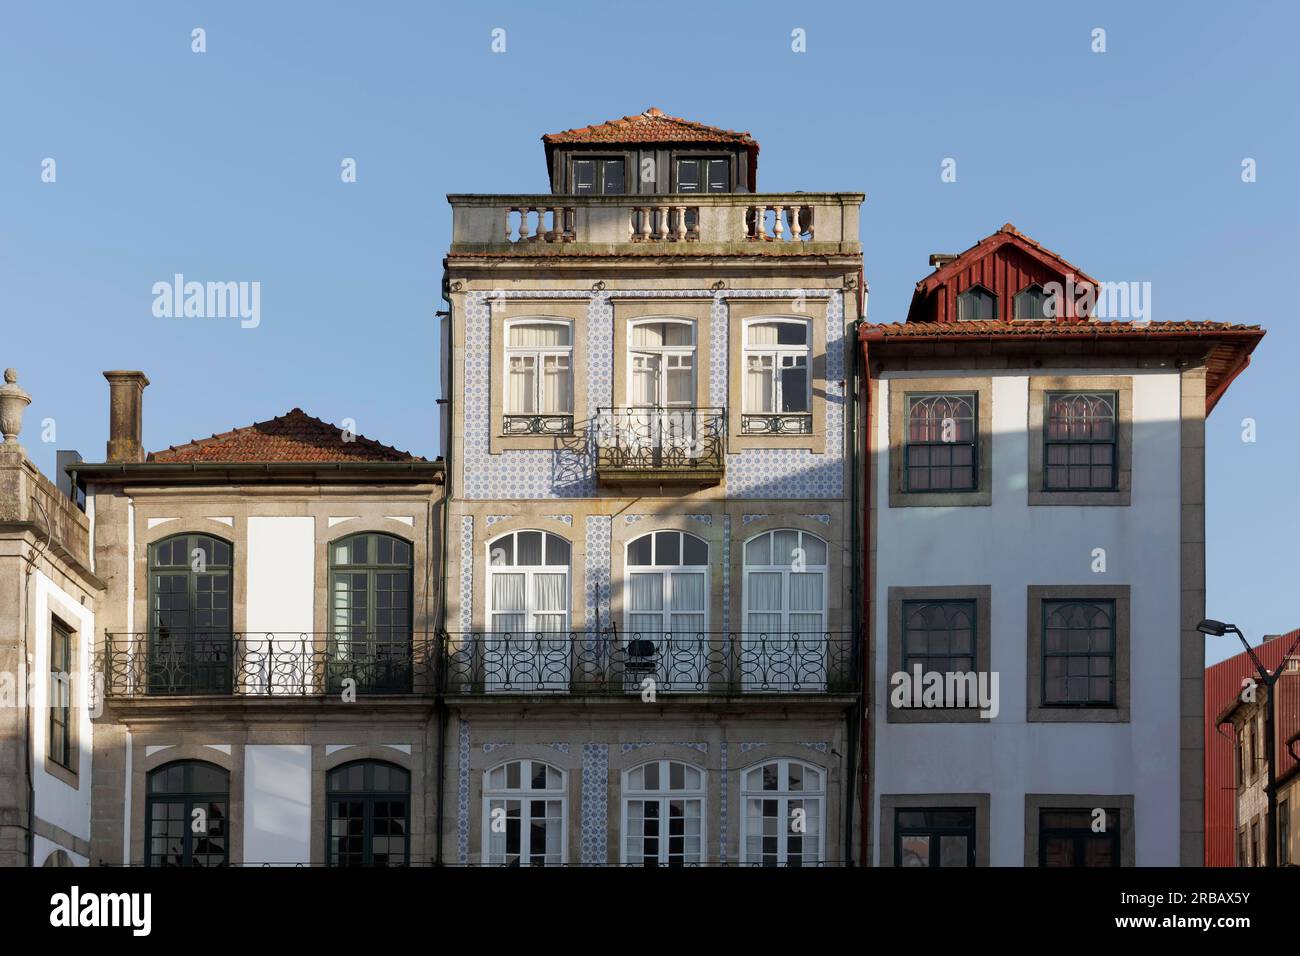 Maisons historiques sur le front de mer de Cais de Gaia, Vila Nova de Gaia, région de Porto, Portugal Banque D'Images